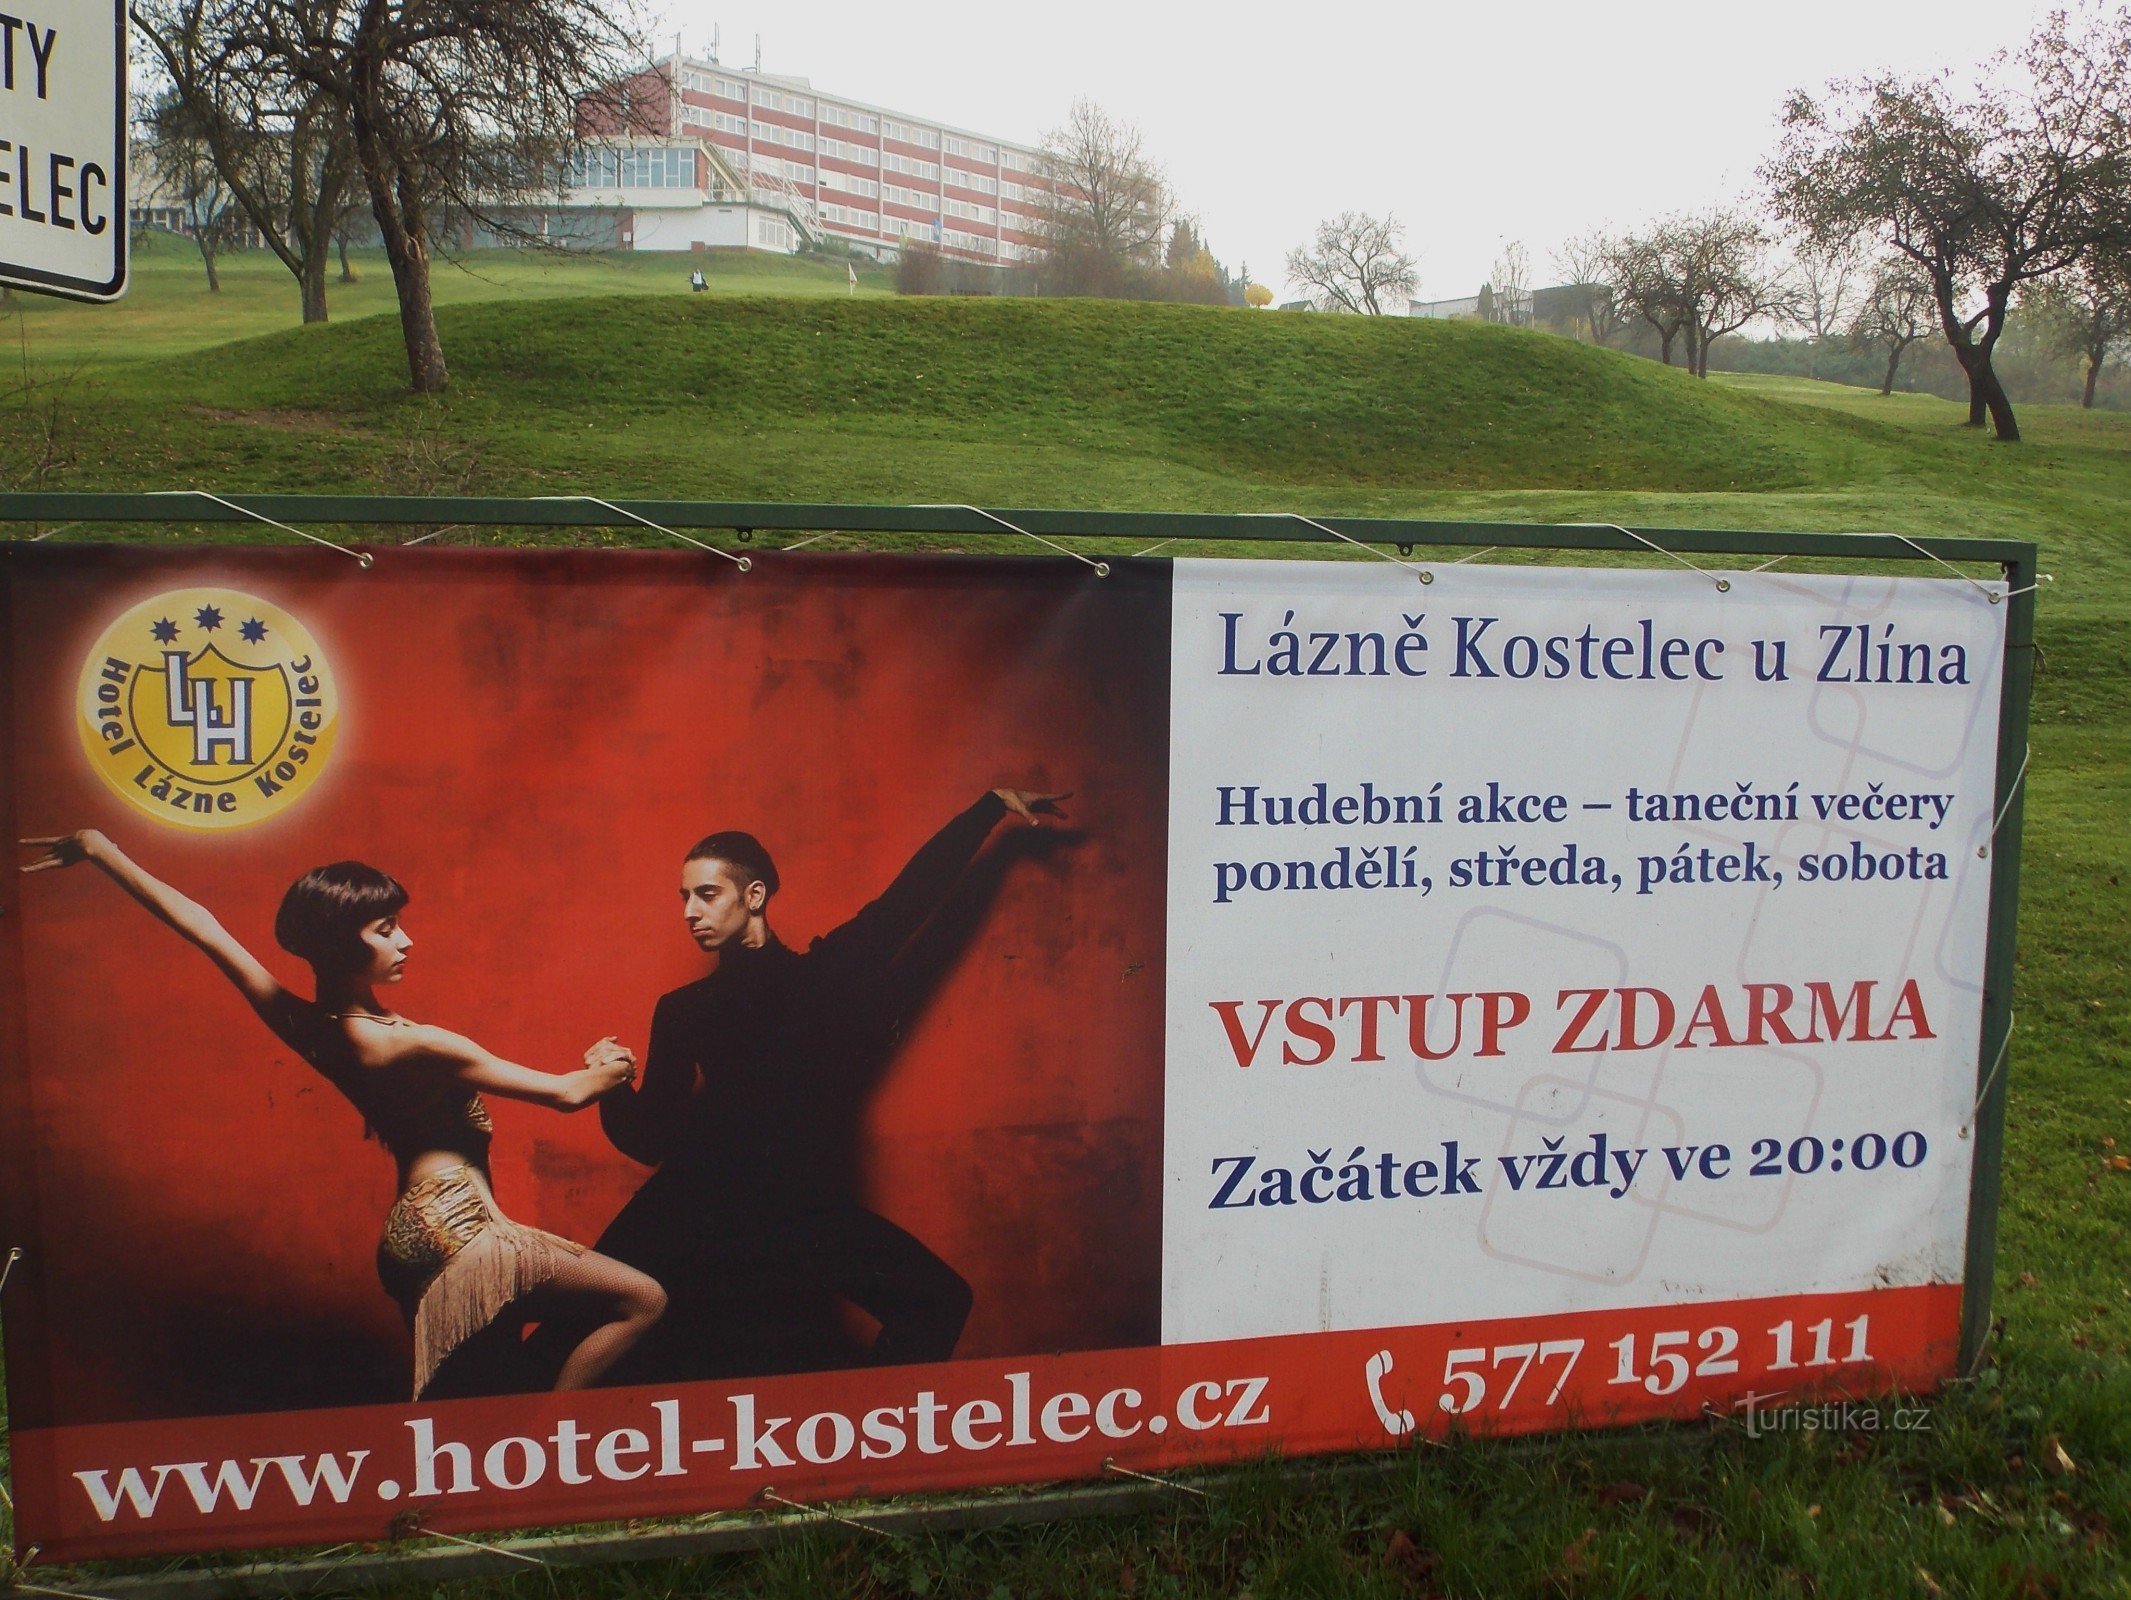 Pentru sănătate și relaxare, mergeți la spa Koselec de lângă Zlín